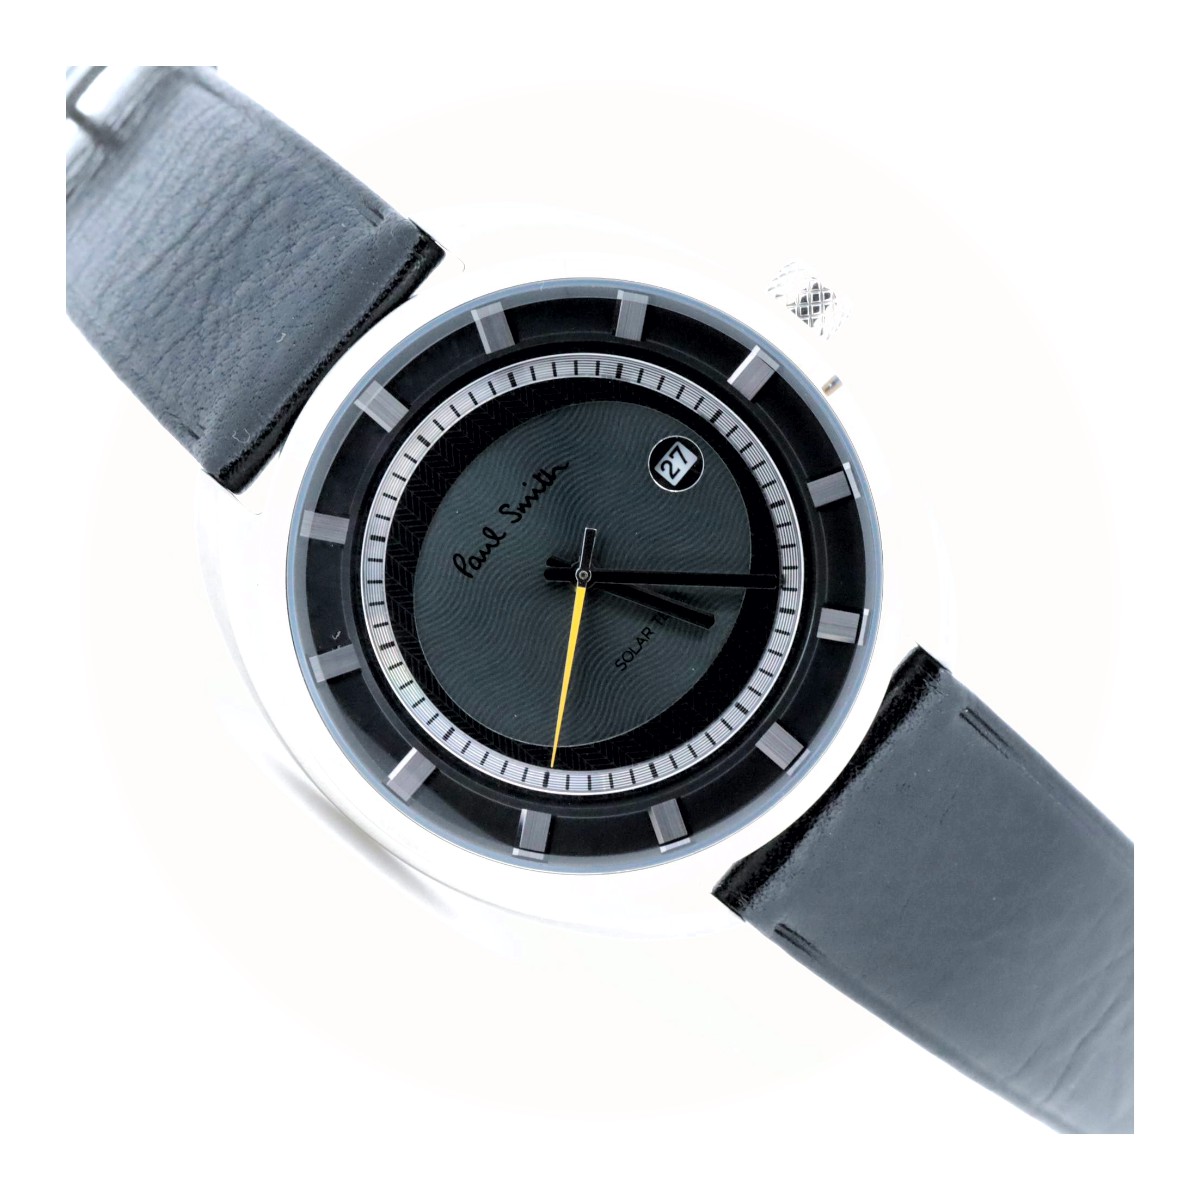 ポールスミス ラウンドフェイス ソーラーテック デイト J810-T021972 グレー メンズ腕時計 質屋出品